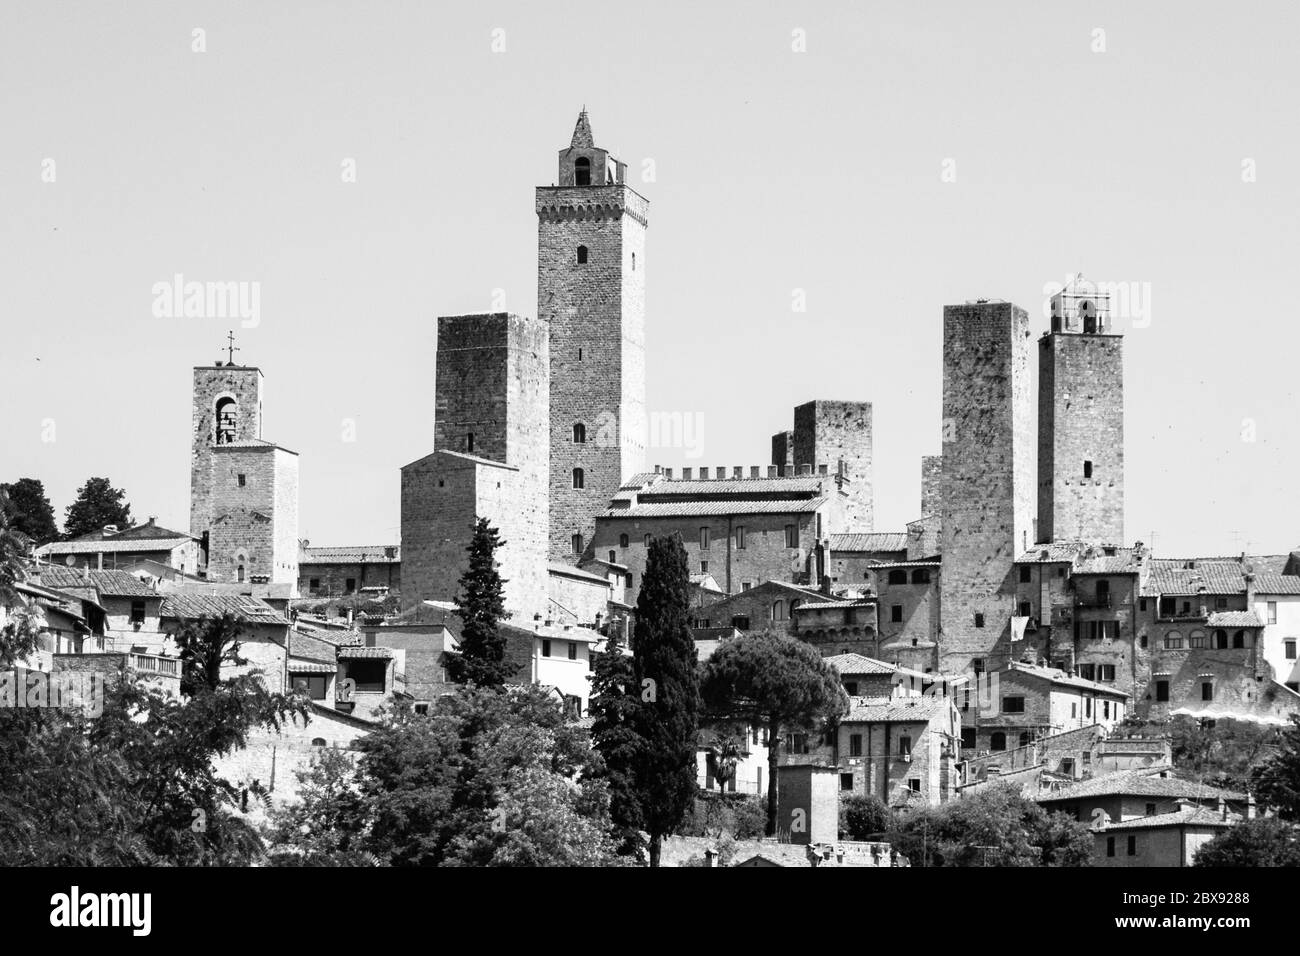 San Gimignano - mittelalterliche Stadt mit vielen Steintürmen, Toskana, Italien. Panoramablick auf die Stadt. Schwarzweiß-Bild. Stockfoto